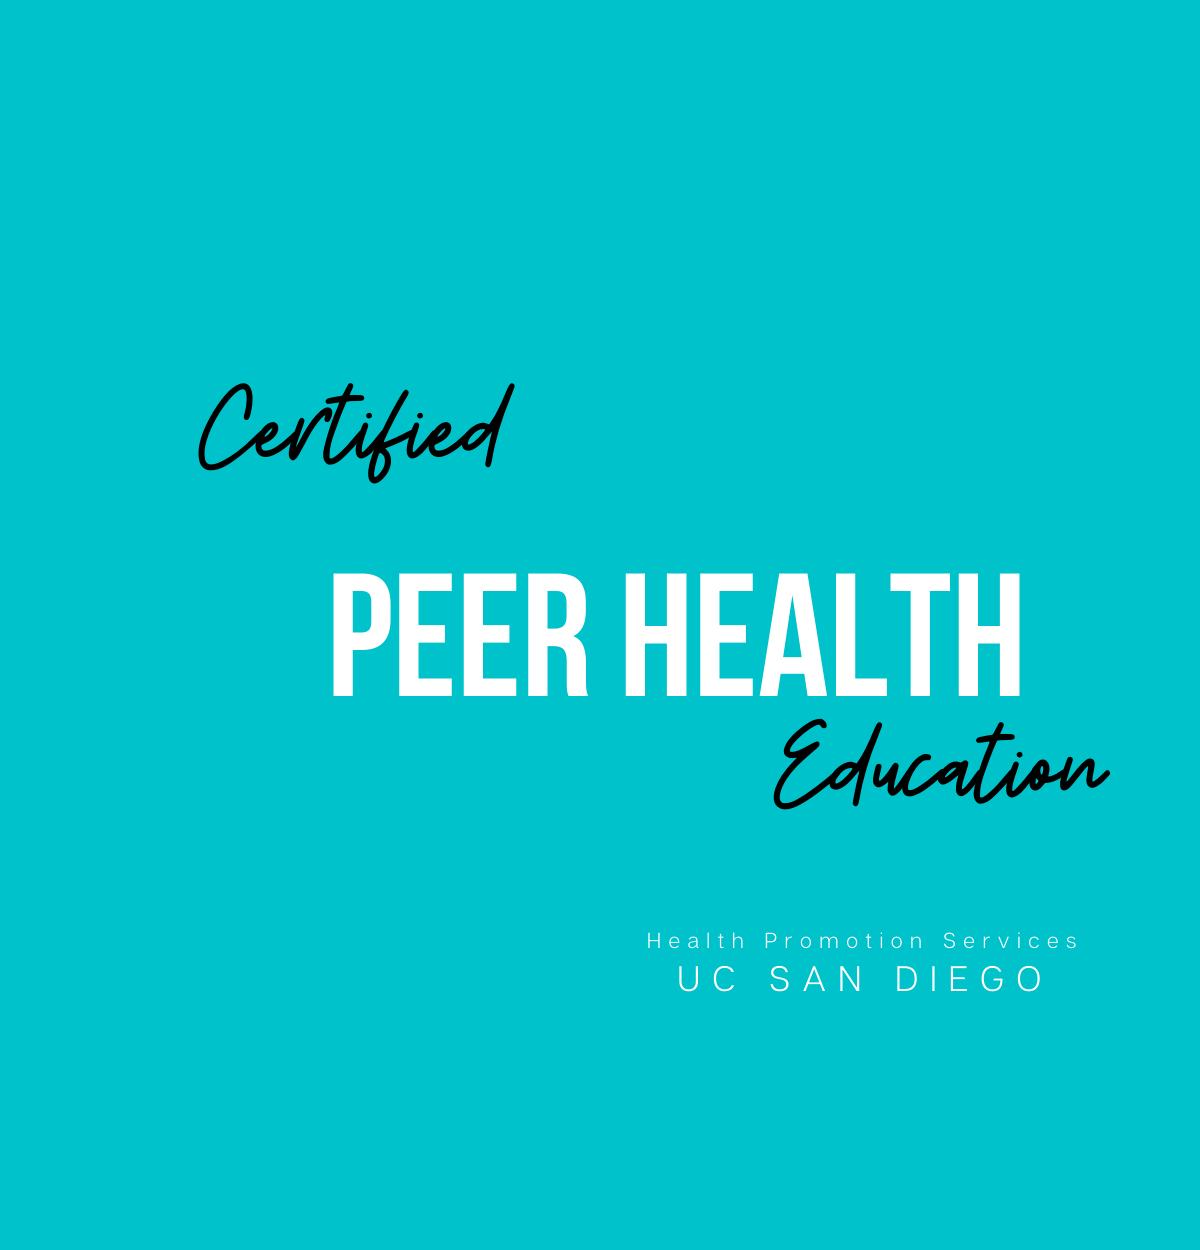 Certified Peer Health Education